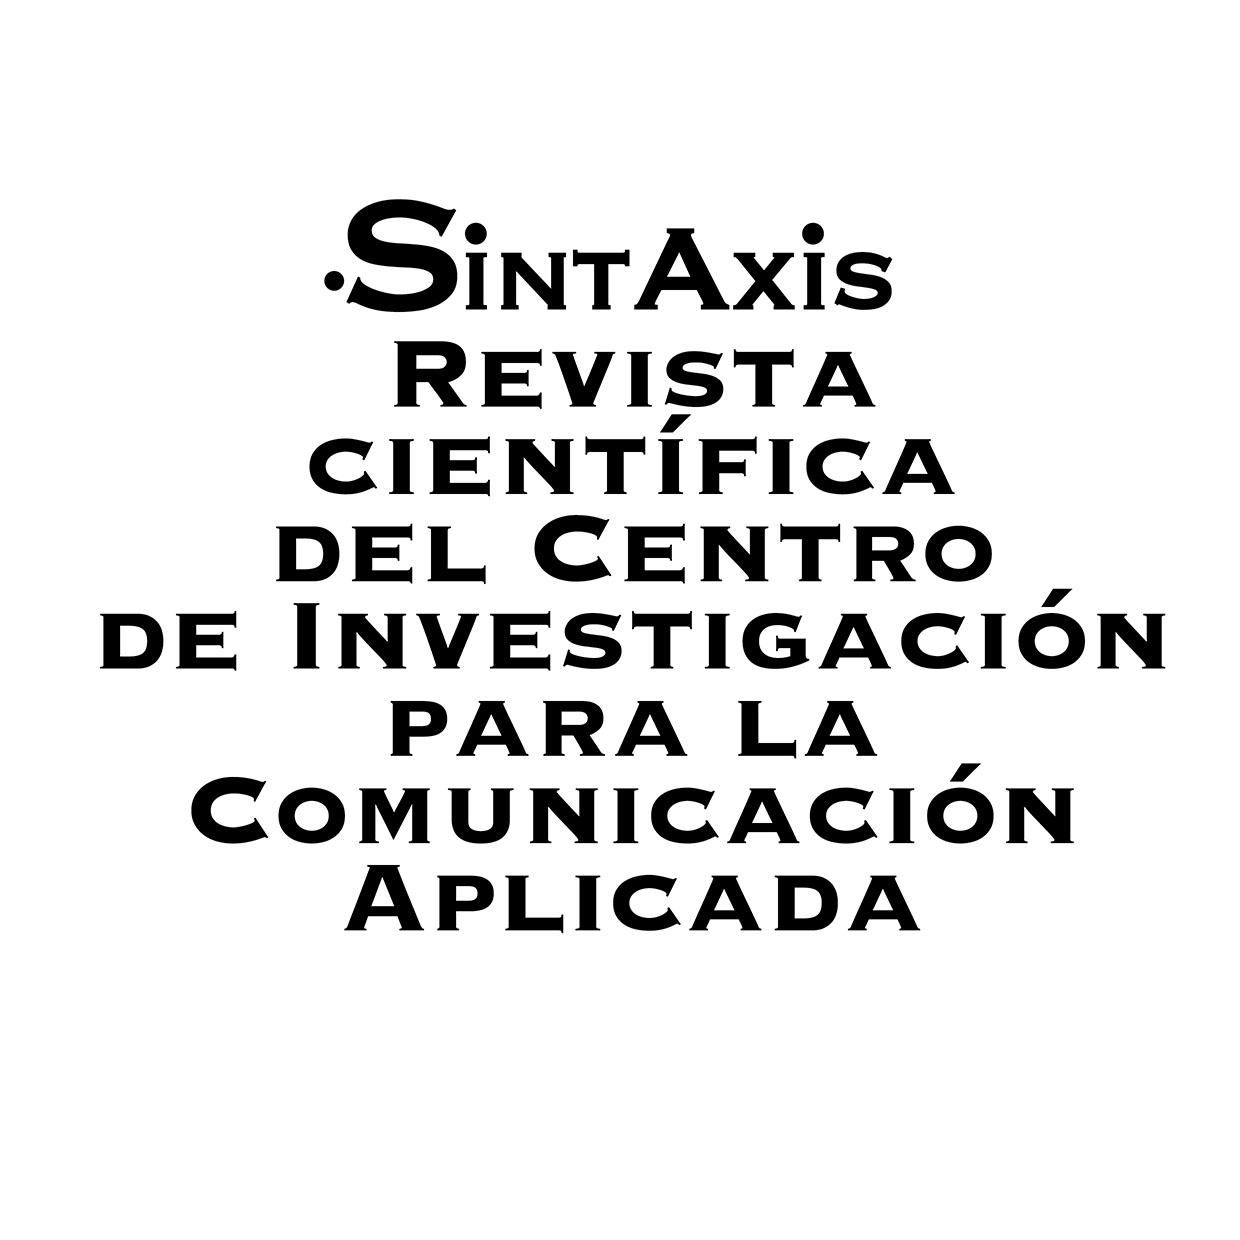 Sintaxis, revista científica la Facultad de Comunicación, es indizada en la base de datos EBSCOhost